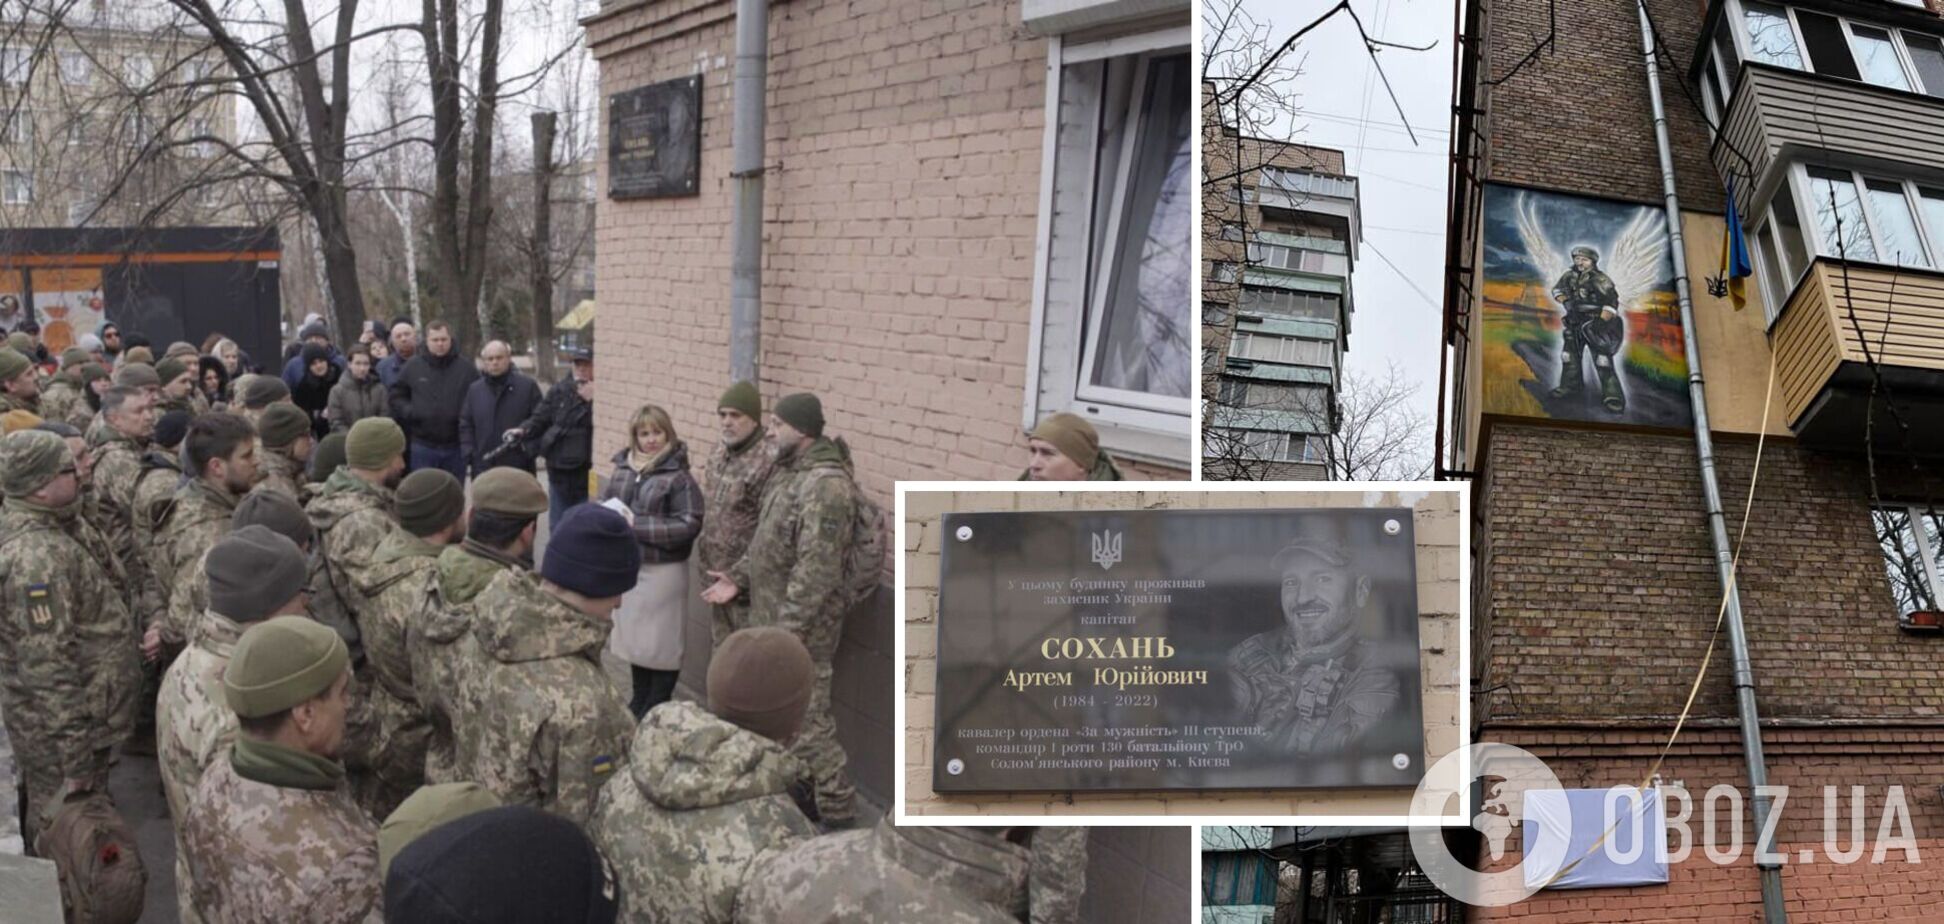 Защитник Украины жил в доме, где создали мурал